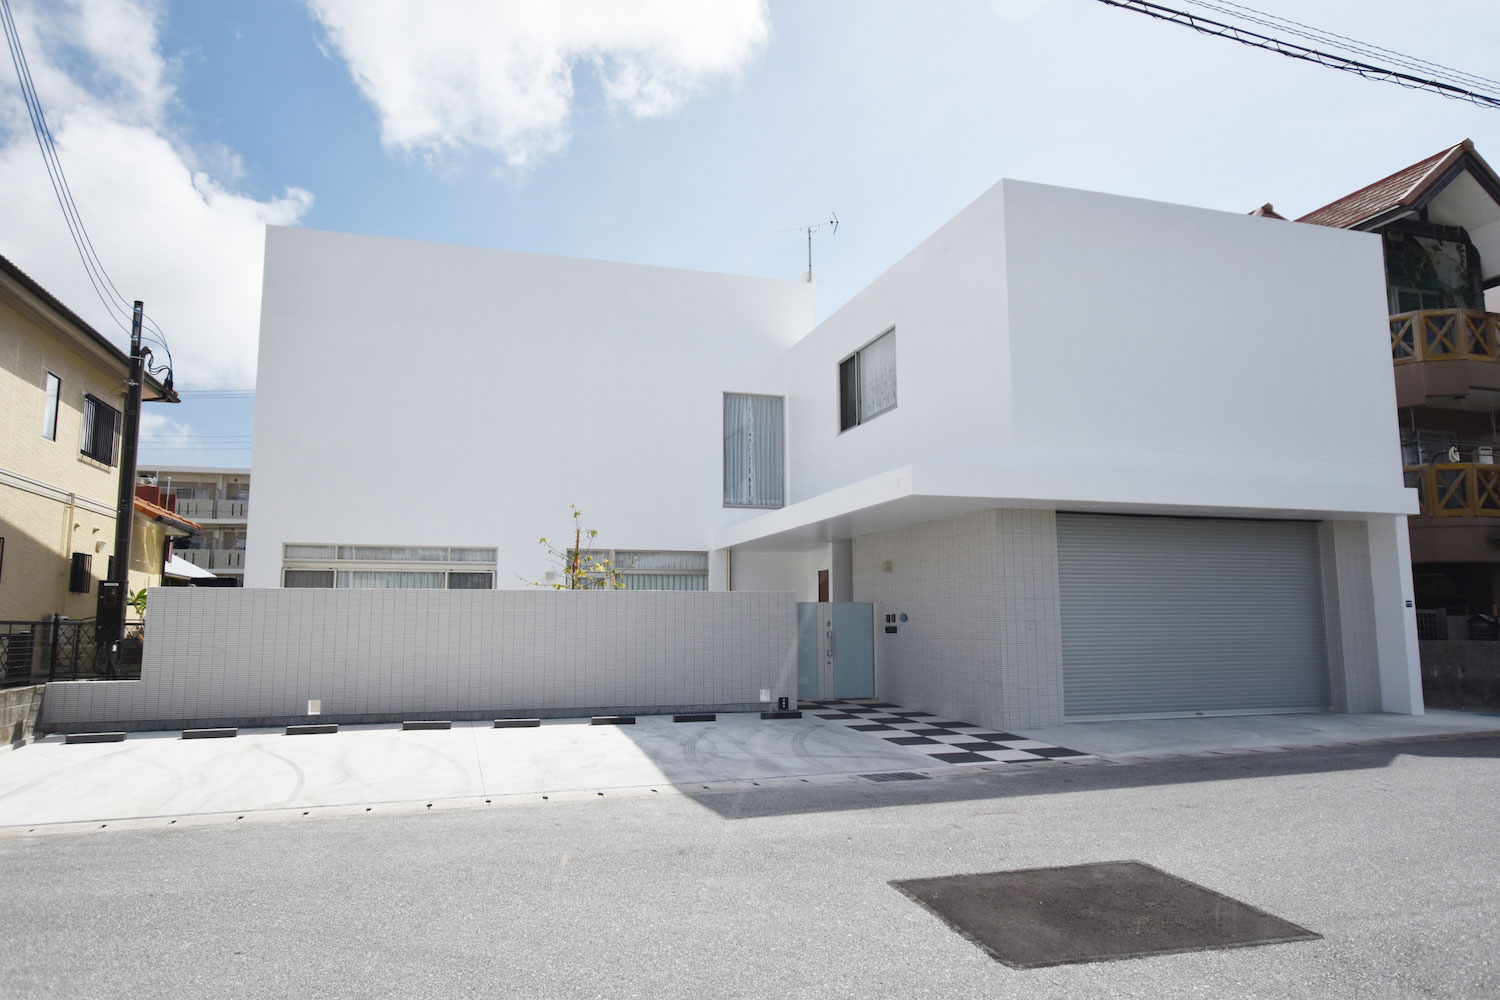 有限会社 名工企画設計の建築作品 いえデザイン 住宅設計展21 沖縄県建築士事務所協会